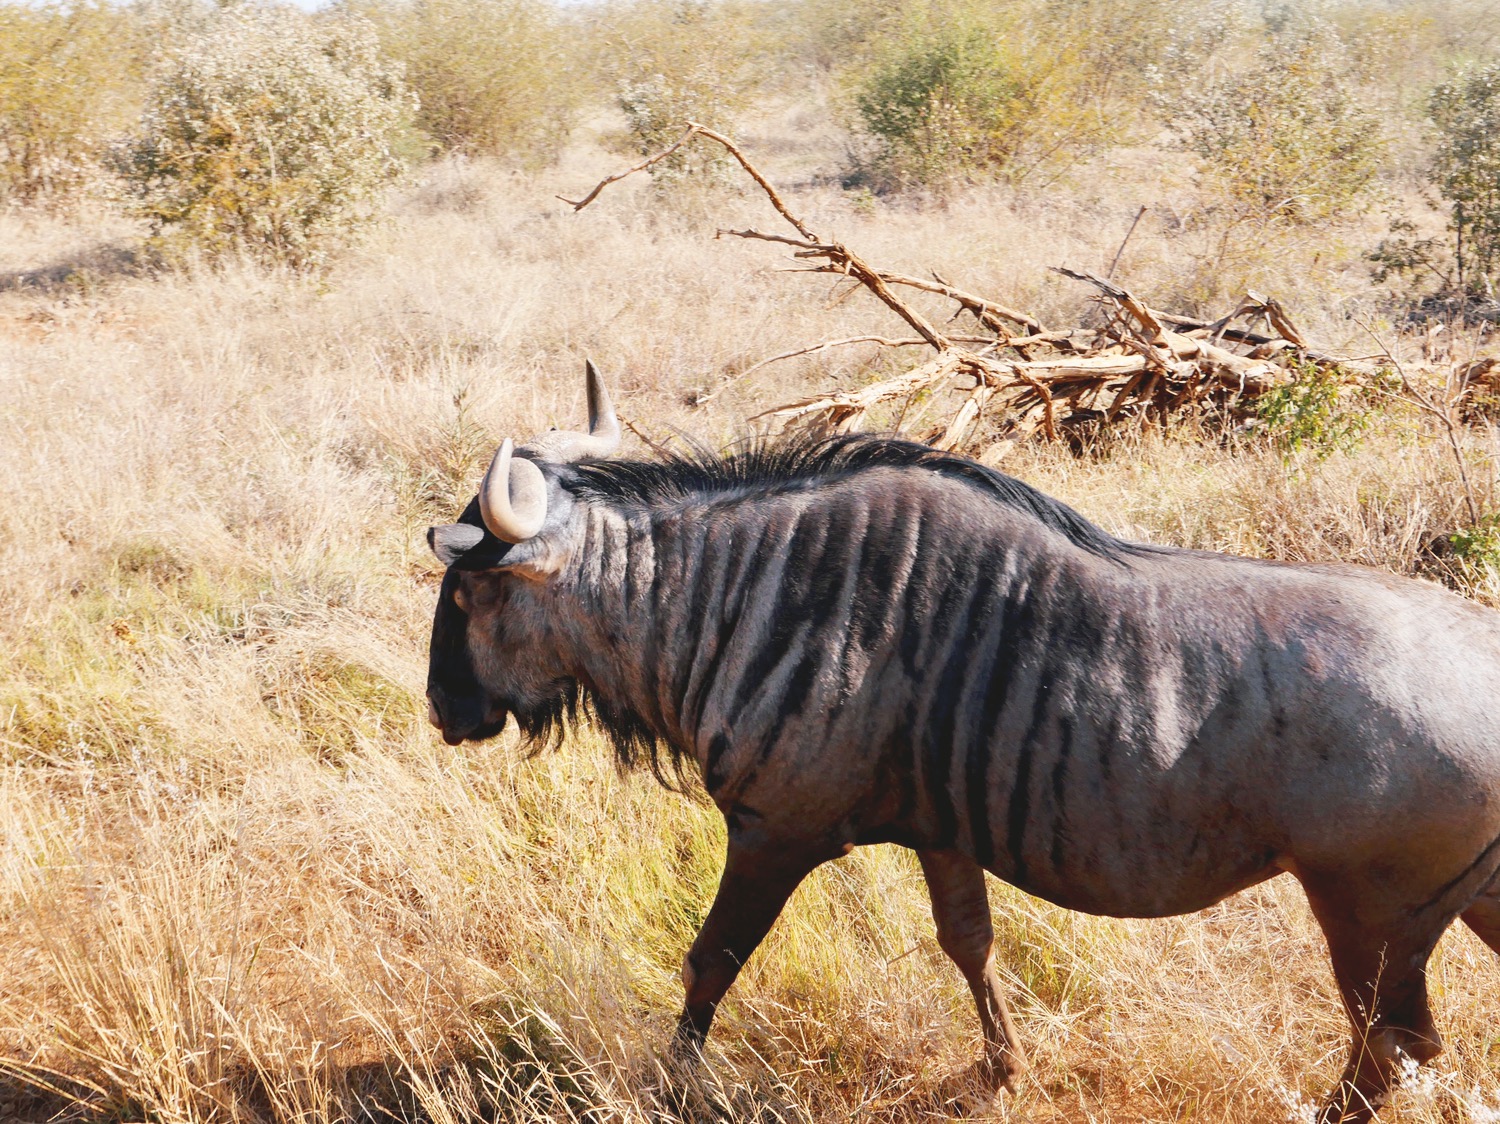 Wildebeest walking @ Madikwe Reserve